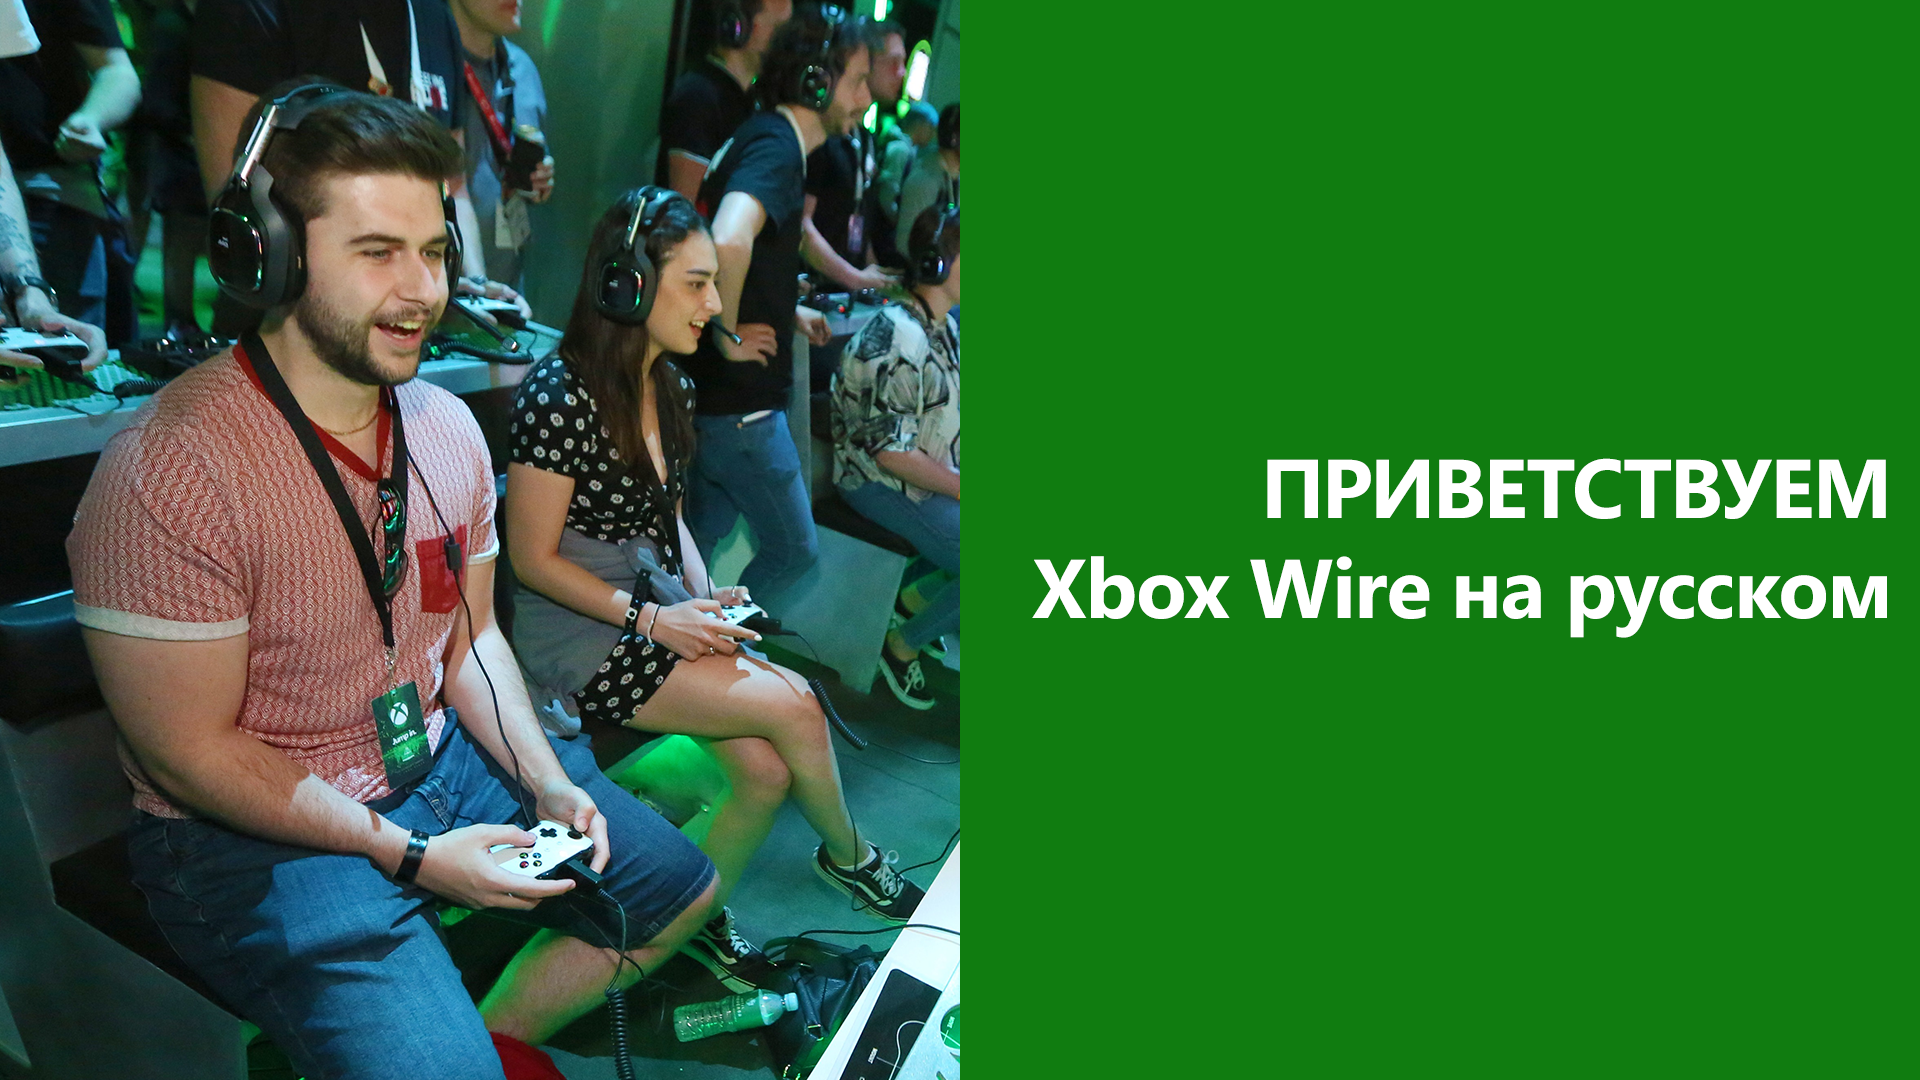 Video For Приветствуем Xbox Wire на русском!